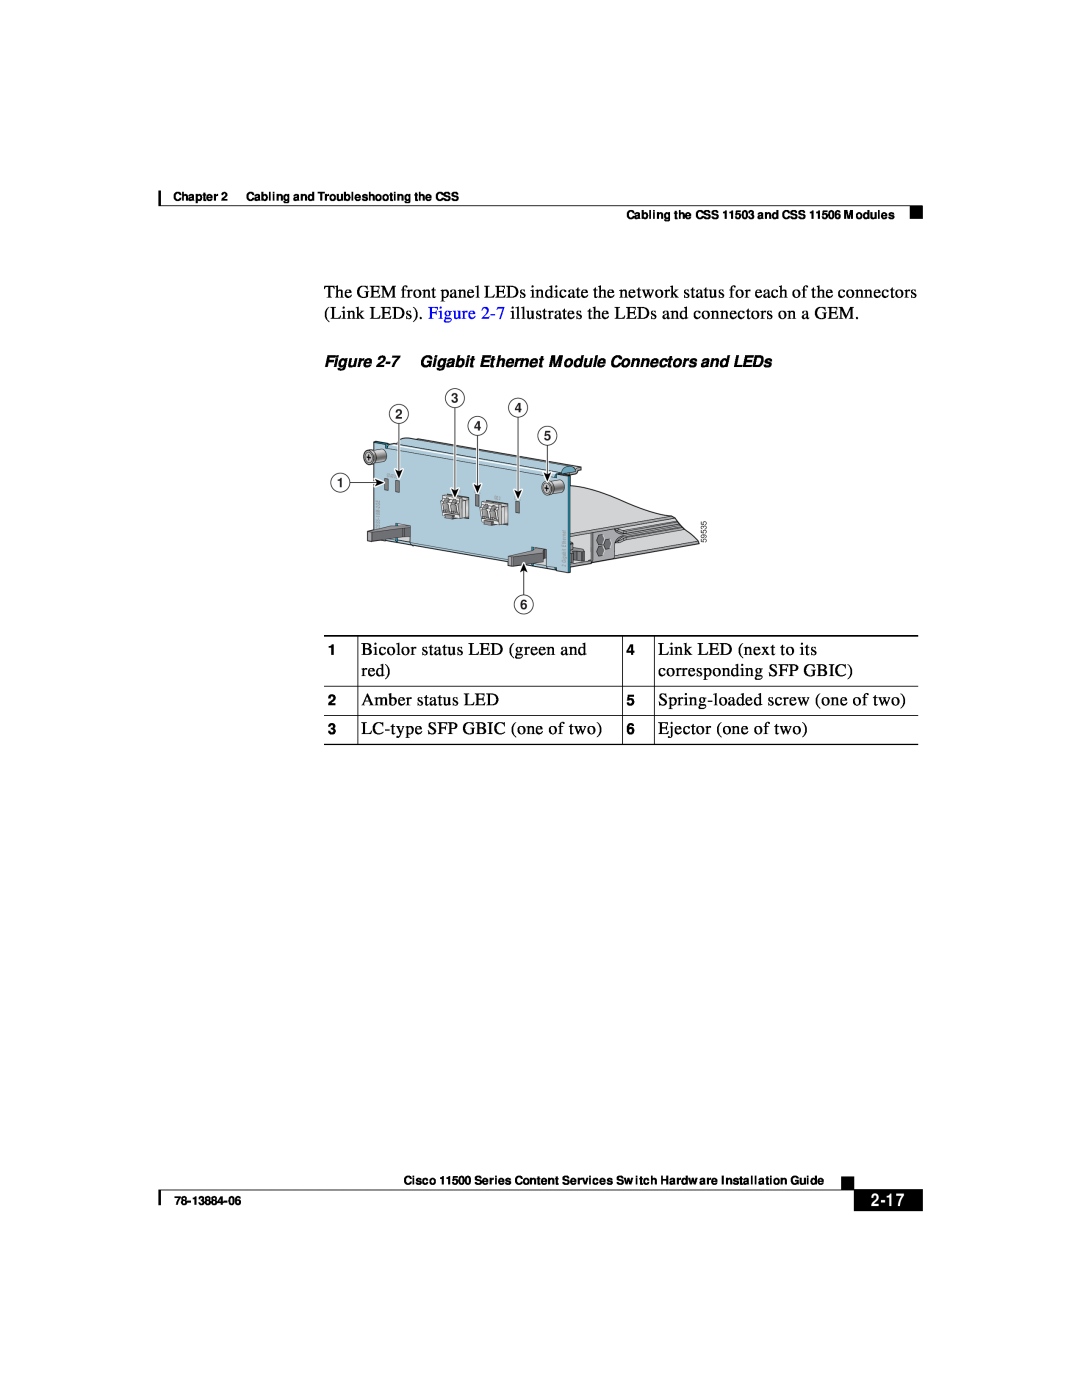 Cisco Systems 11500 Series manual 2-17, 7 Gigabit Ethernet Module Connectors and LEDs, C S S 5 - 1 0 M - 2 G E 